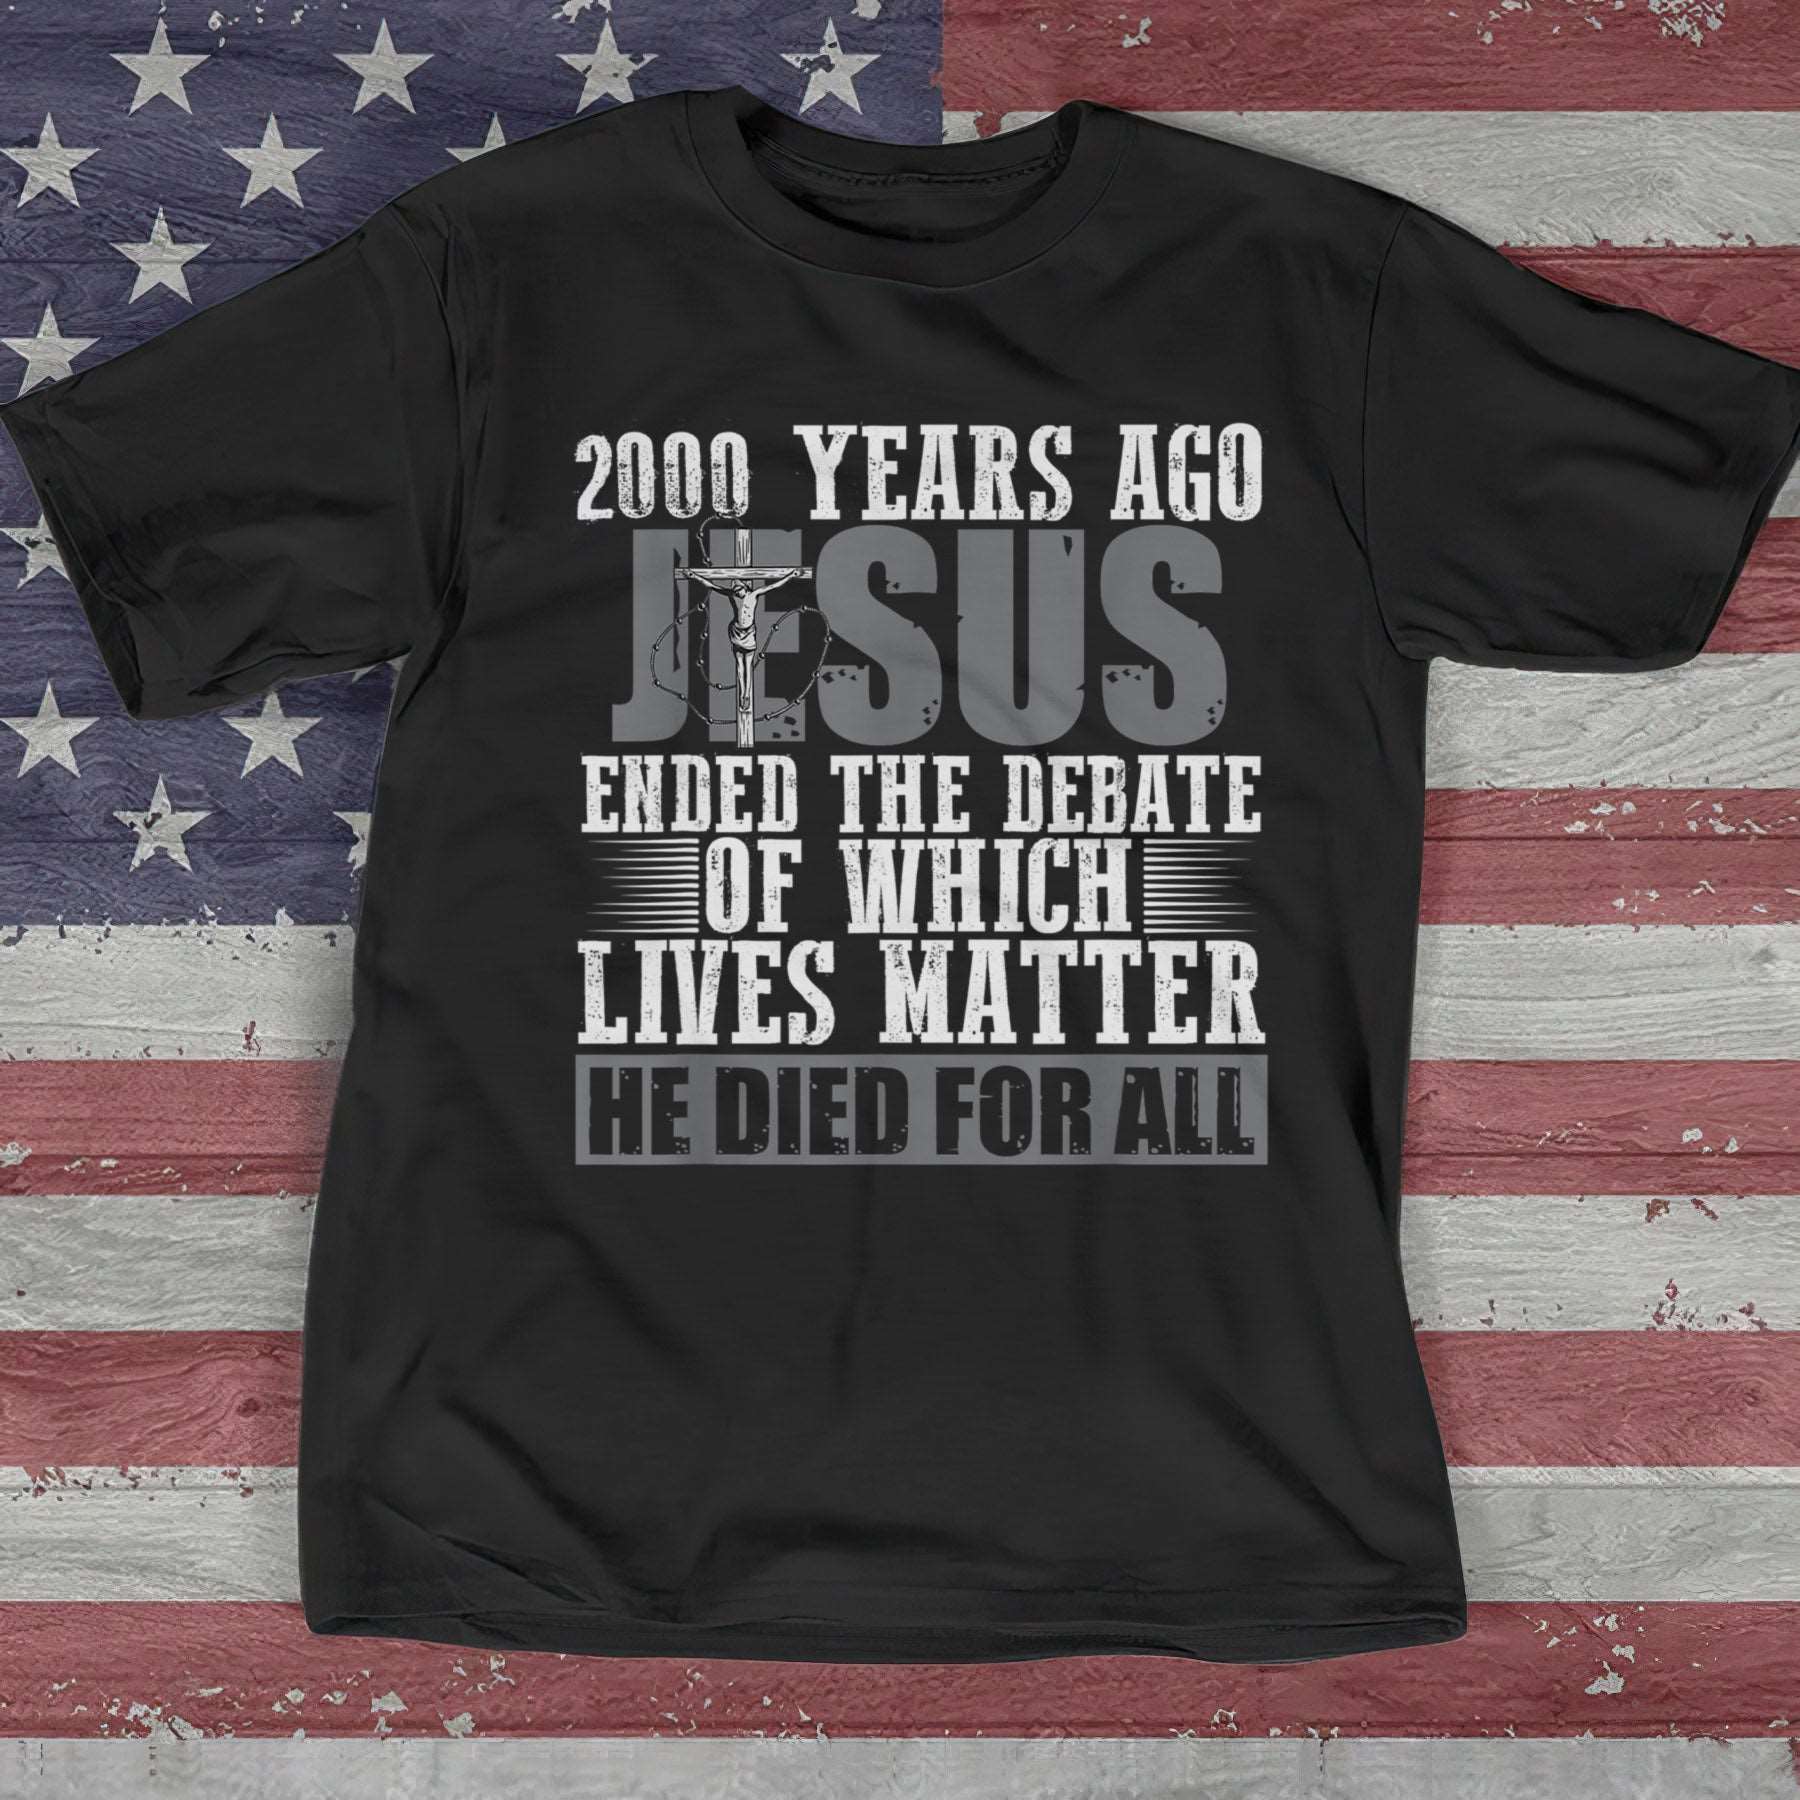 2000 Years Ago Jesus T-Shirt - Cool Christian Shirts For Men & Women - Ciaocustom